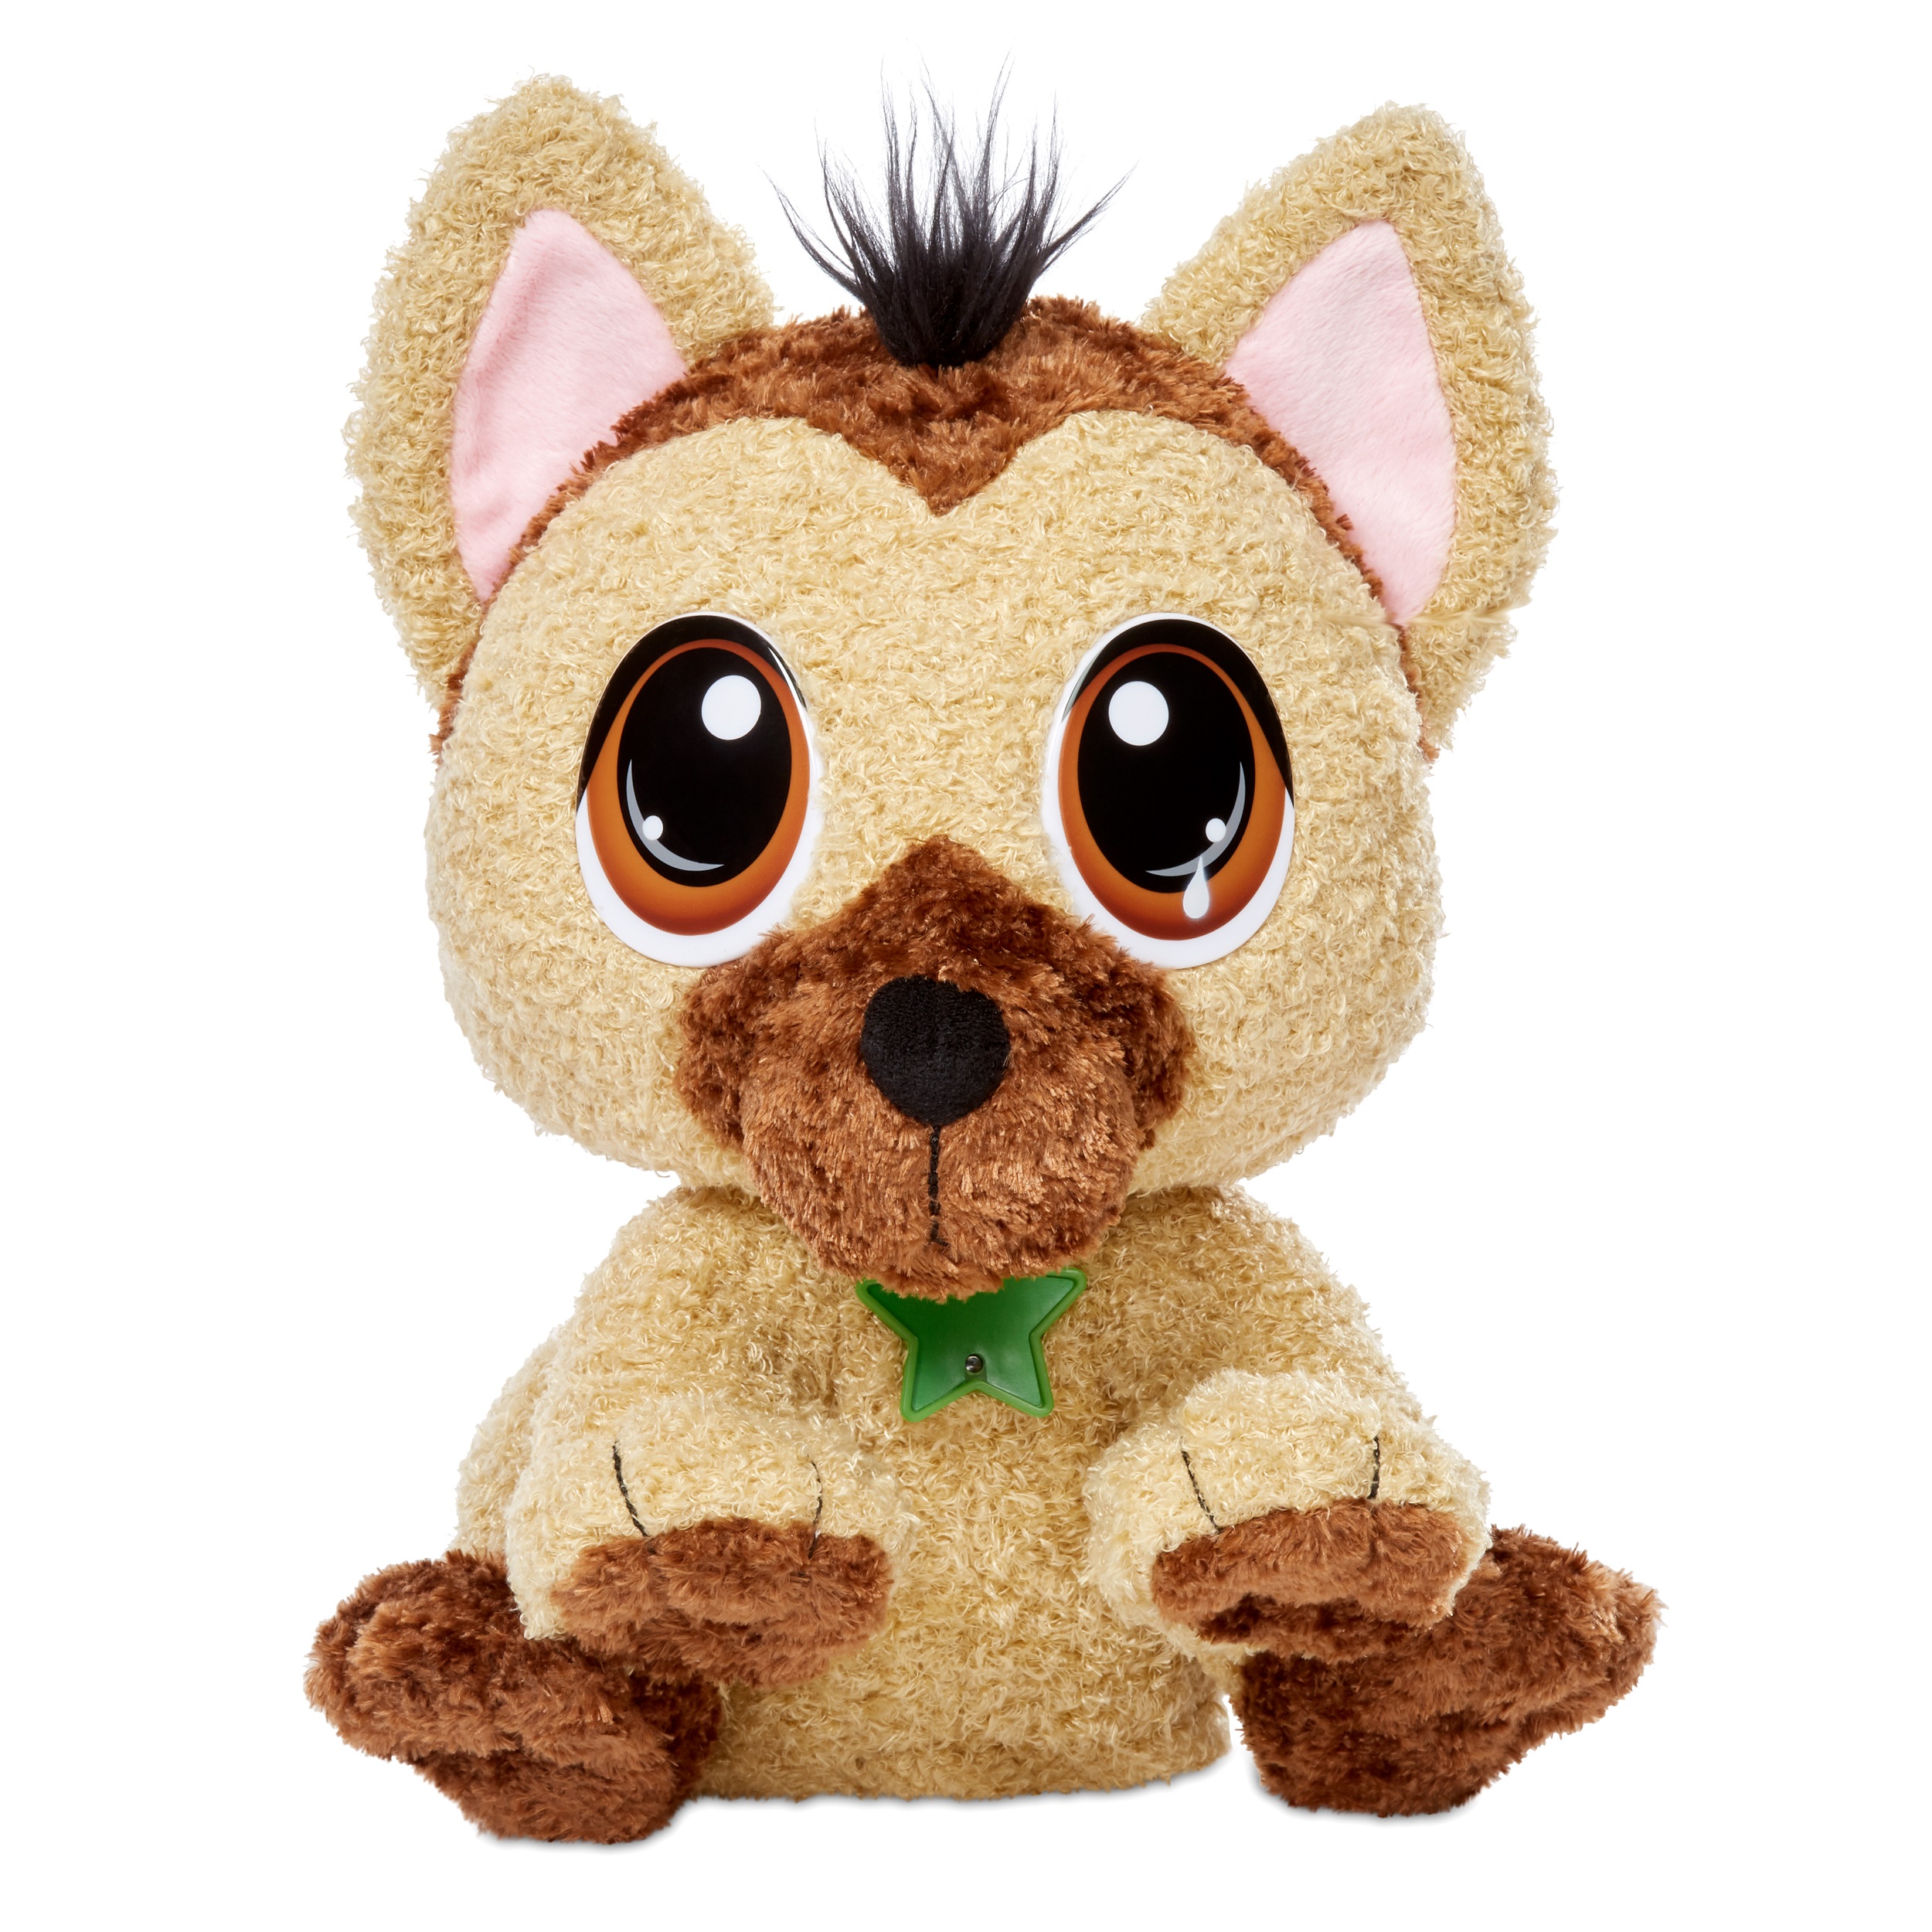 Little Tikes Rescue Tales Adoptable German Shepherd Interactive Plush Pet Toy $11.65 + Free Shipping w/ Amazon Prime